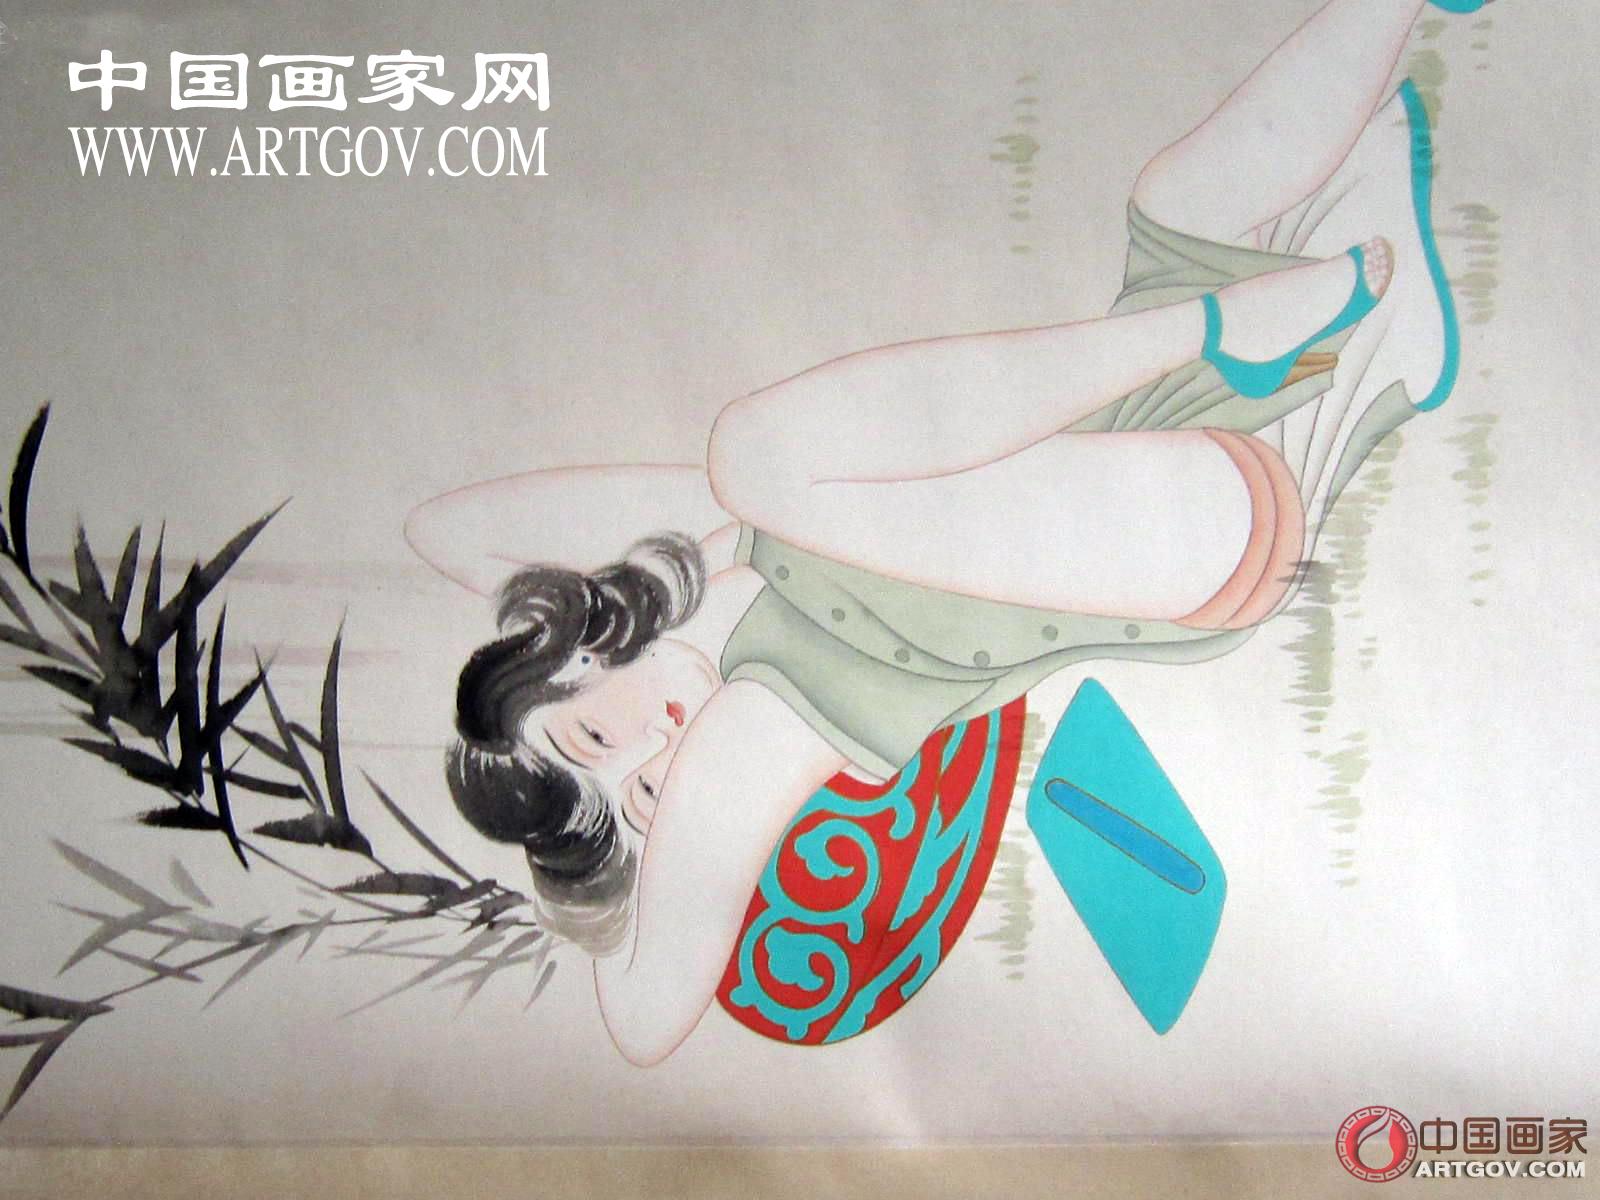 《百年巨匠》中国艺术家——张大千